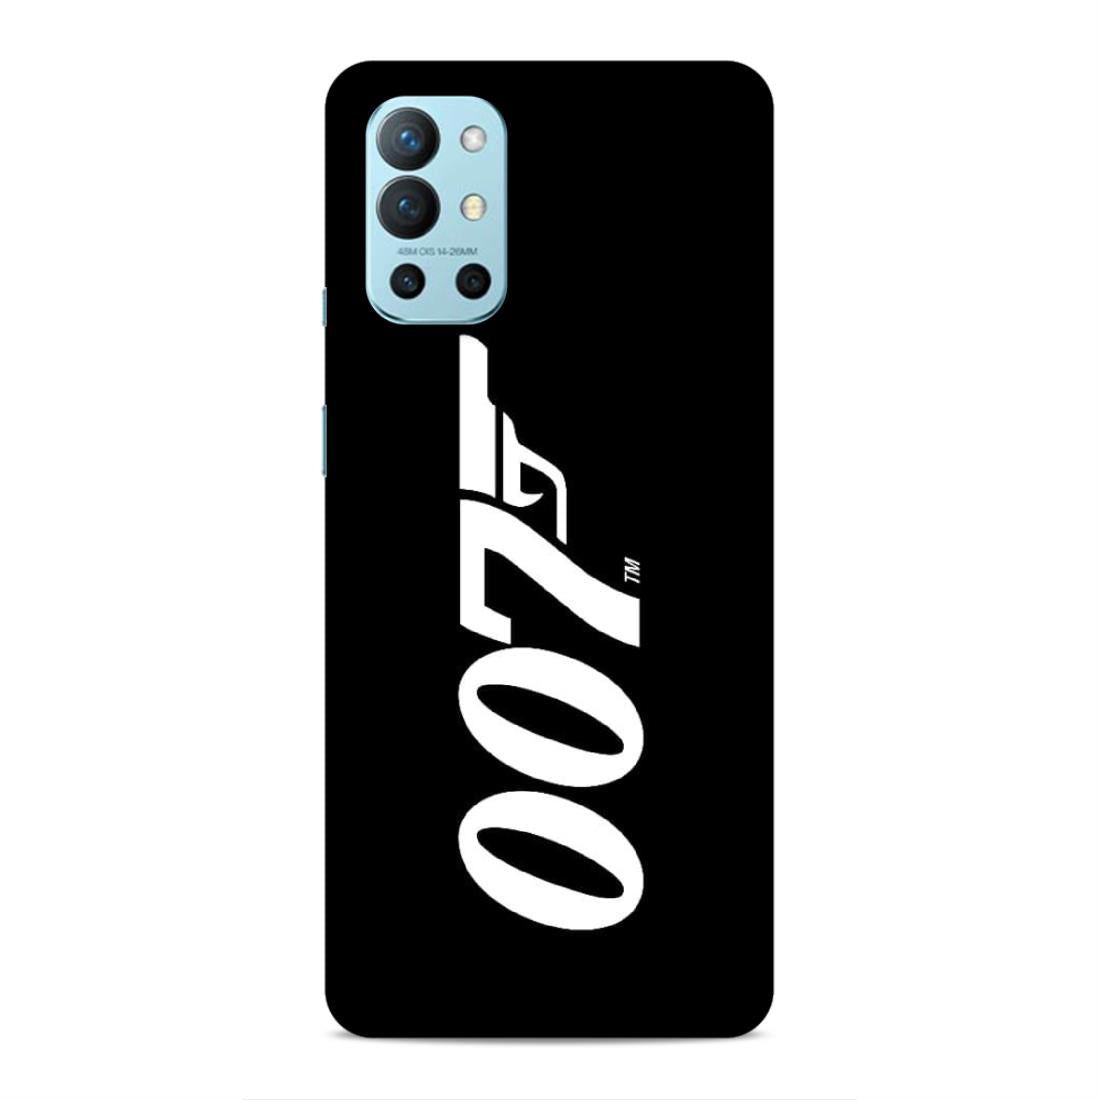 Jems Bond 007 Hard Back Case For OnePlus 8T / 9R